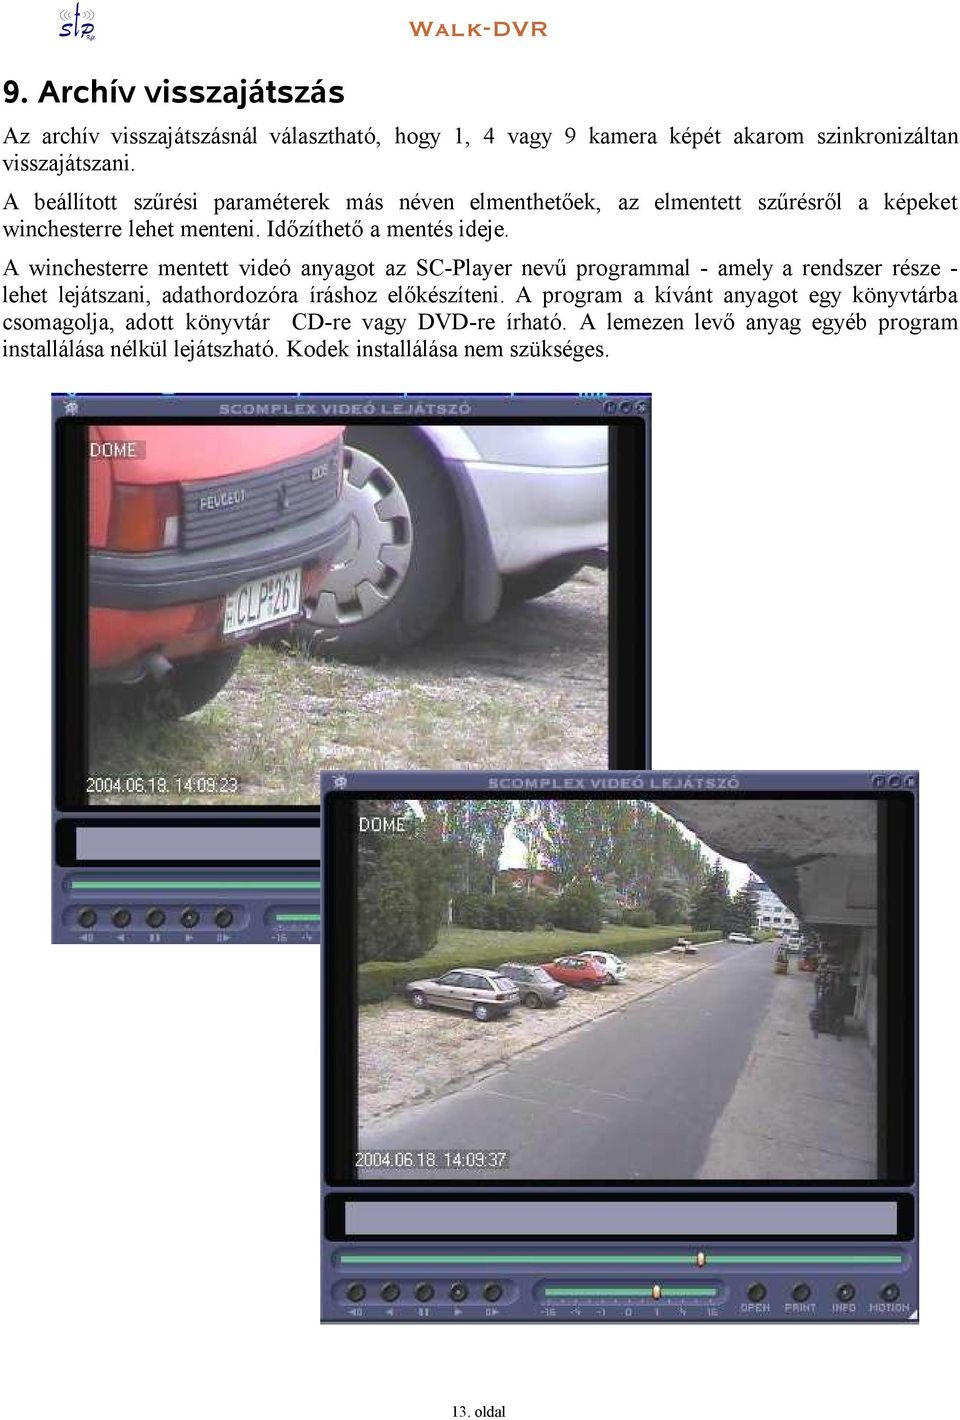 A winchesterre mentett videó anyagot az SC-Player nevű programmal - amely a rendszer része - lehet lejátszani, adathordozóra íráshoz előkészíteni.